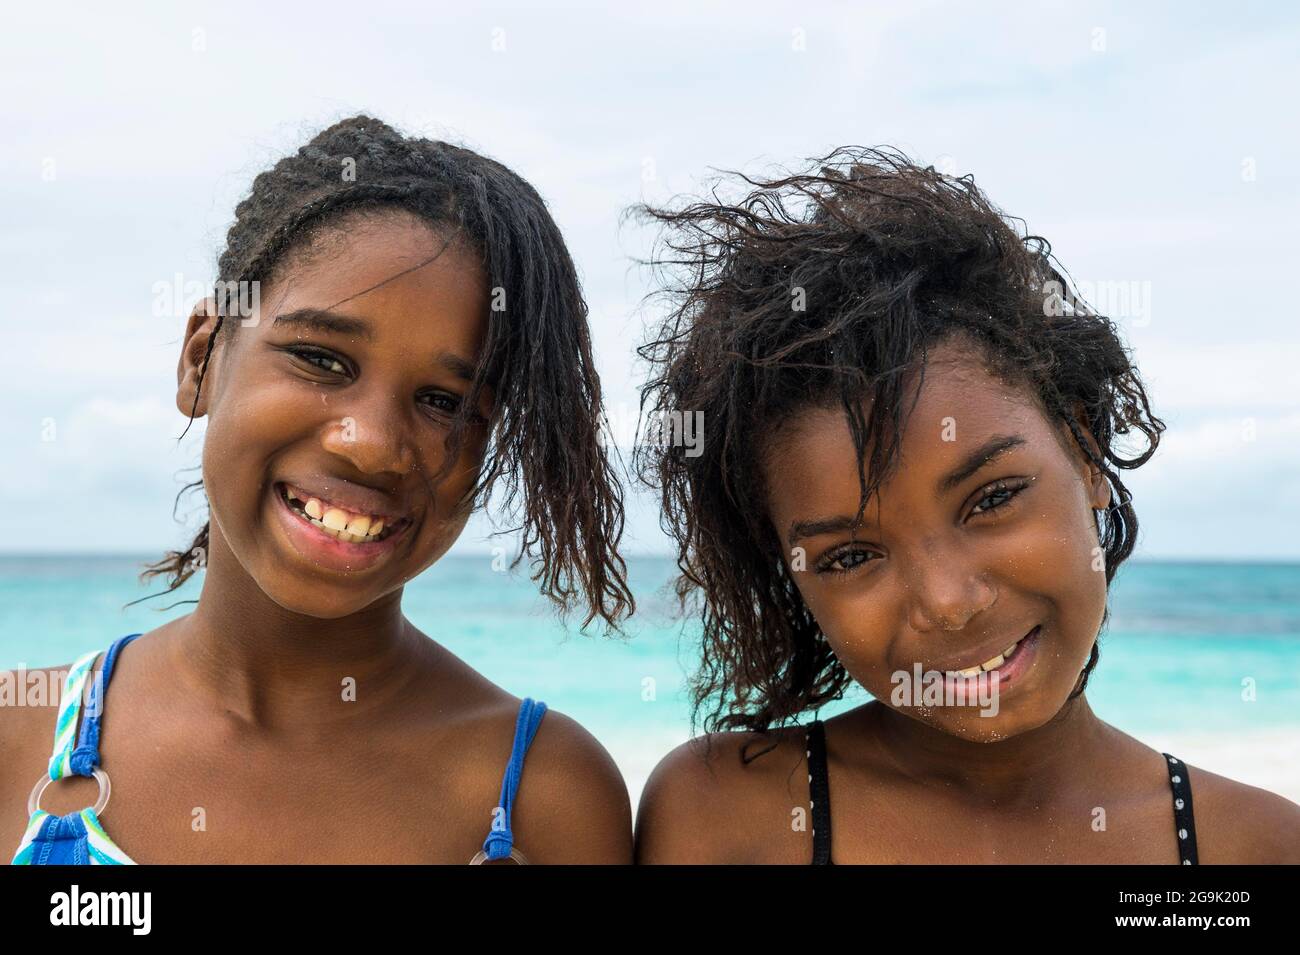 Jolies jeunes filles locales, sur la plage de classe mondiale de Shoal Bay East, Anguilla, Caraïbes, territoire britannique Oversea, Royaume-Uni Banque D'Images